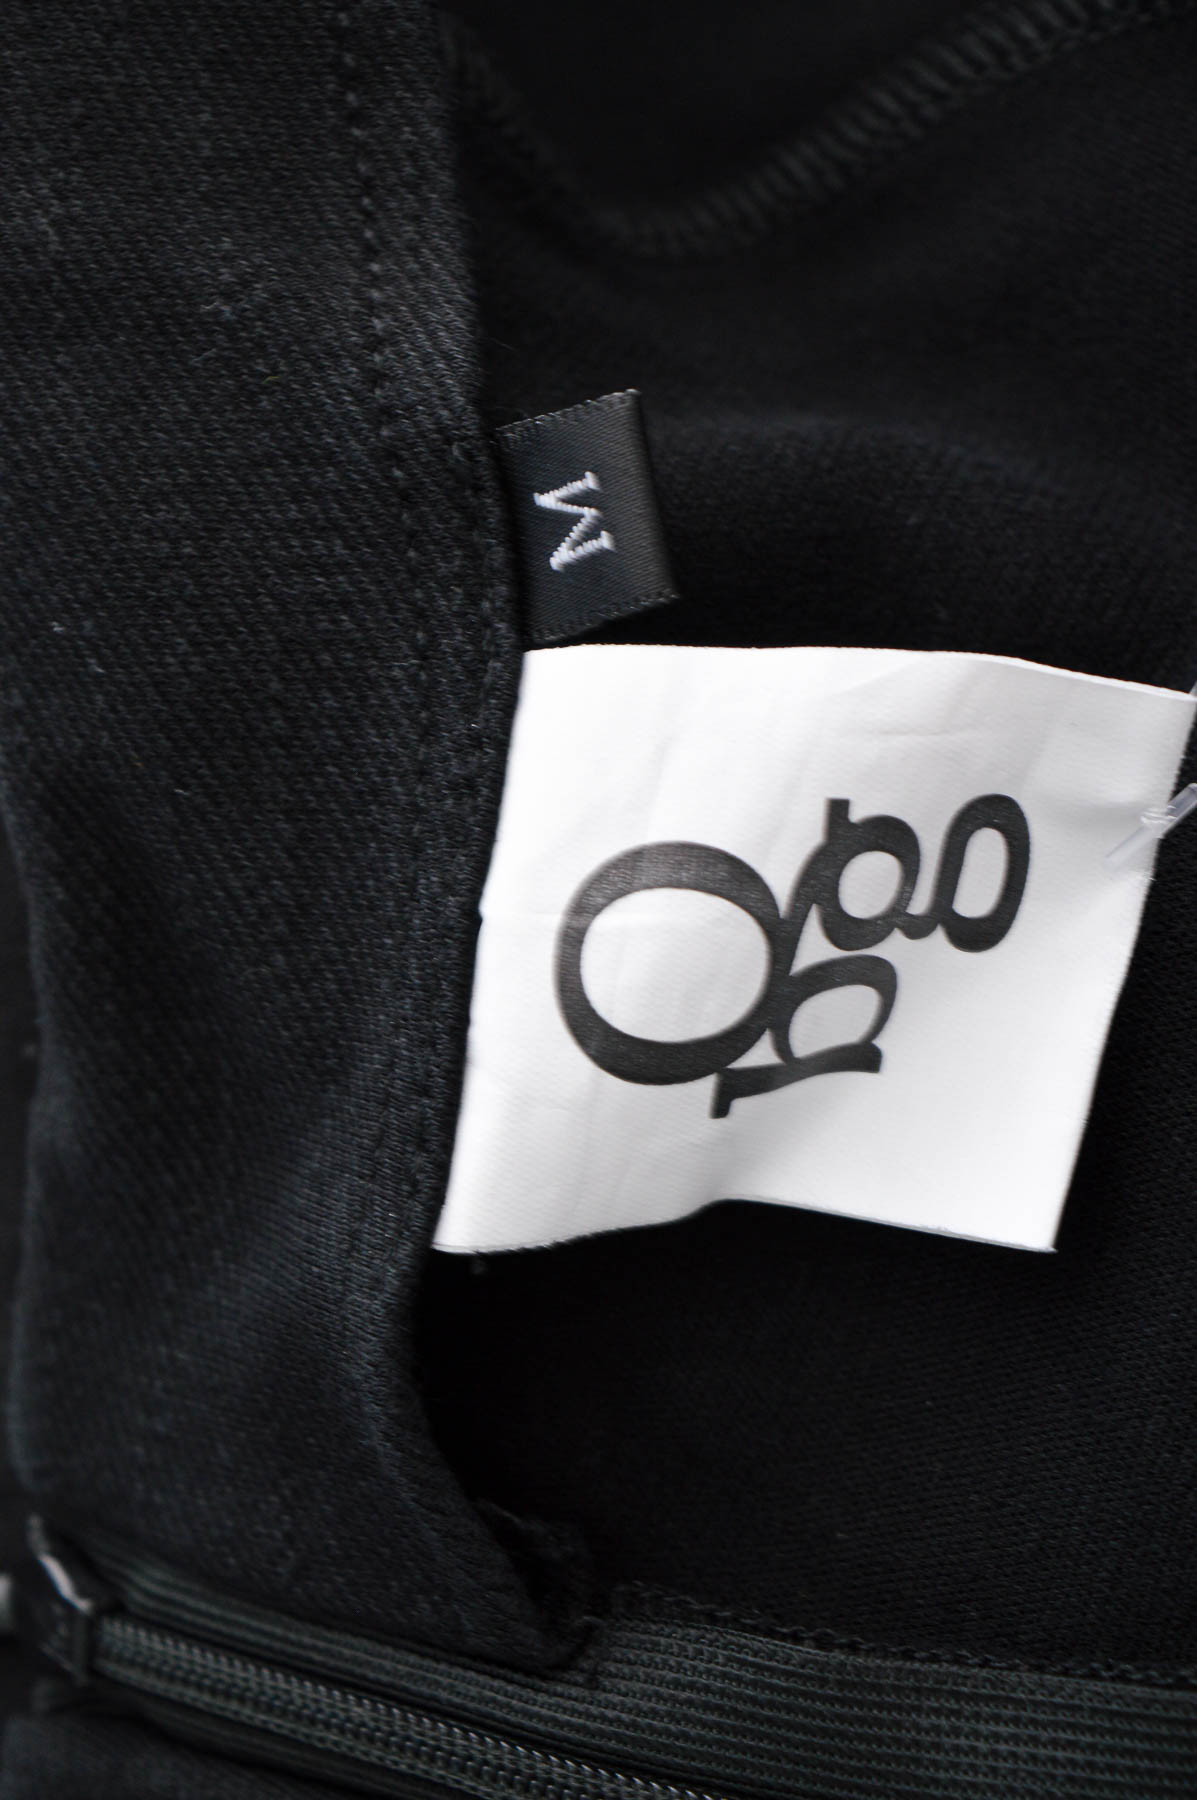 Female shorts - Qbg - 2